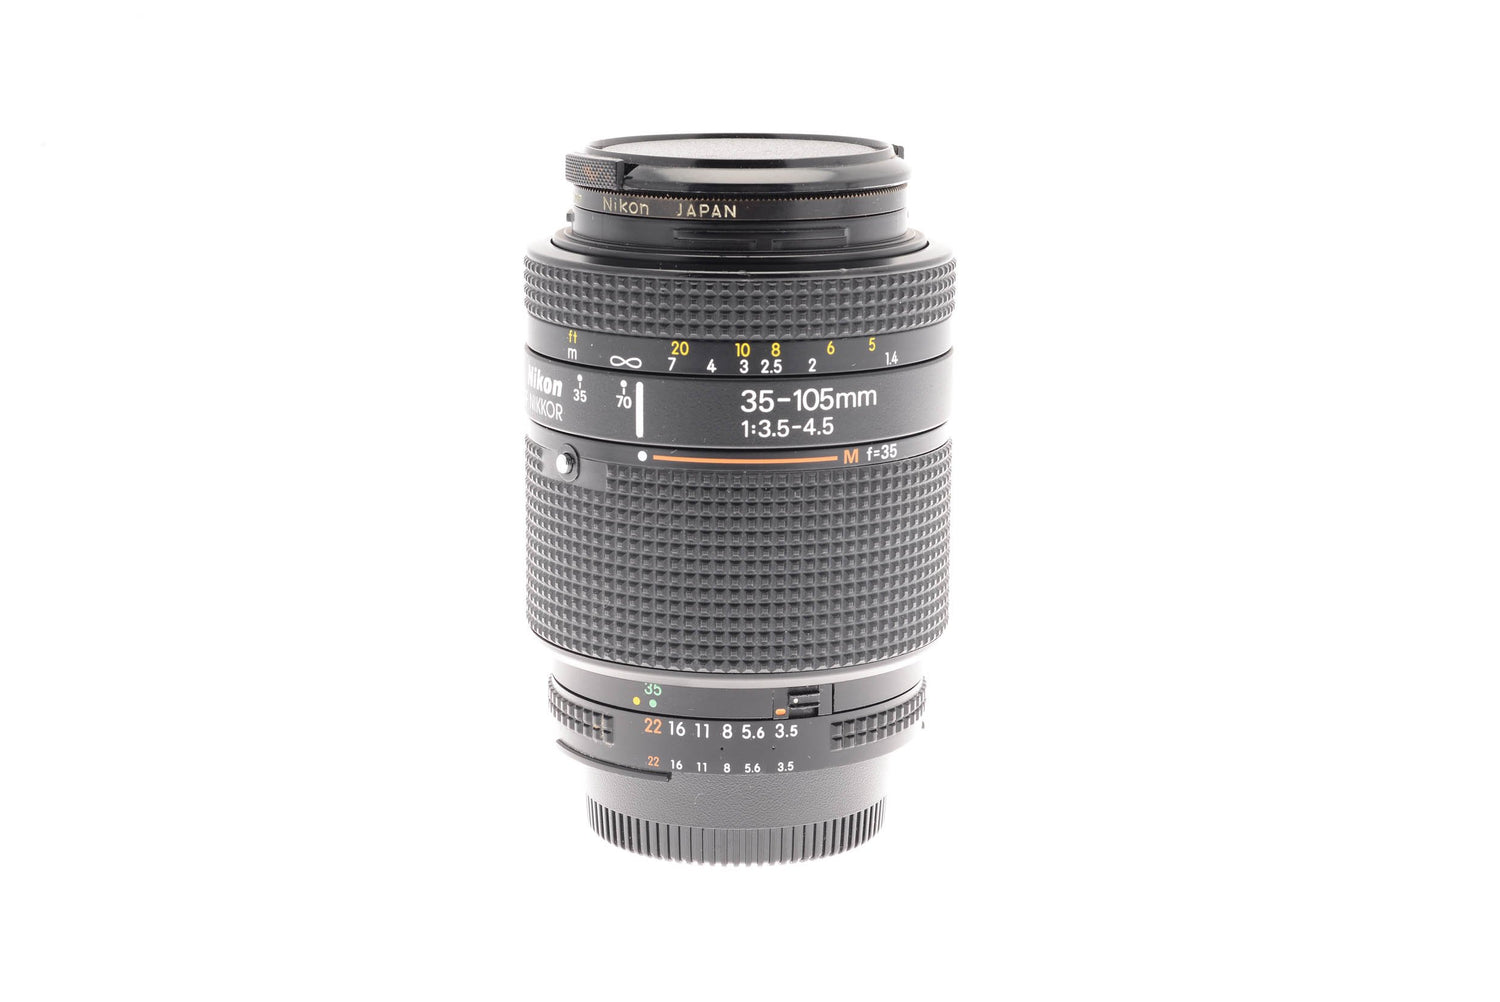 Nikon 35-105mm f3.5-4.5 D AF Nikkor - Lens